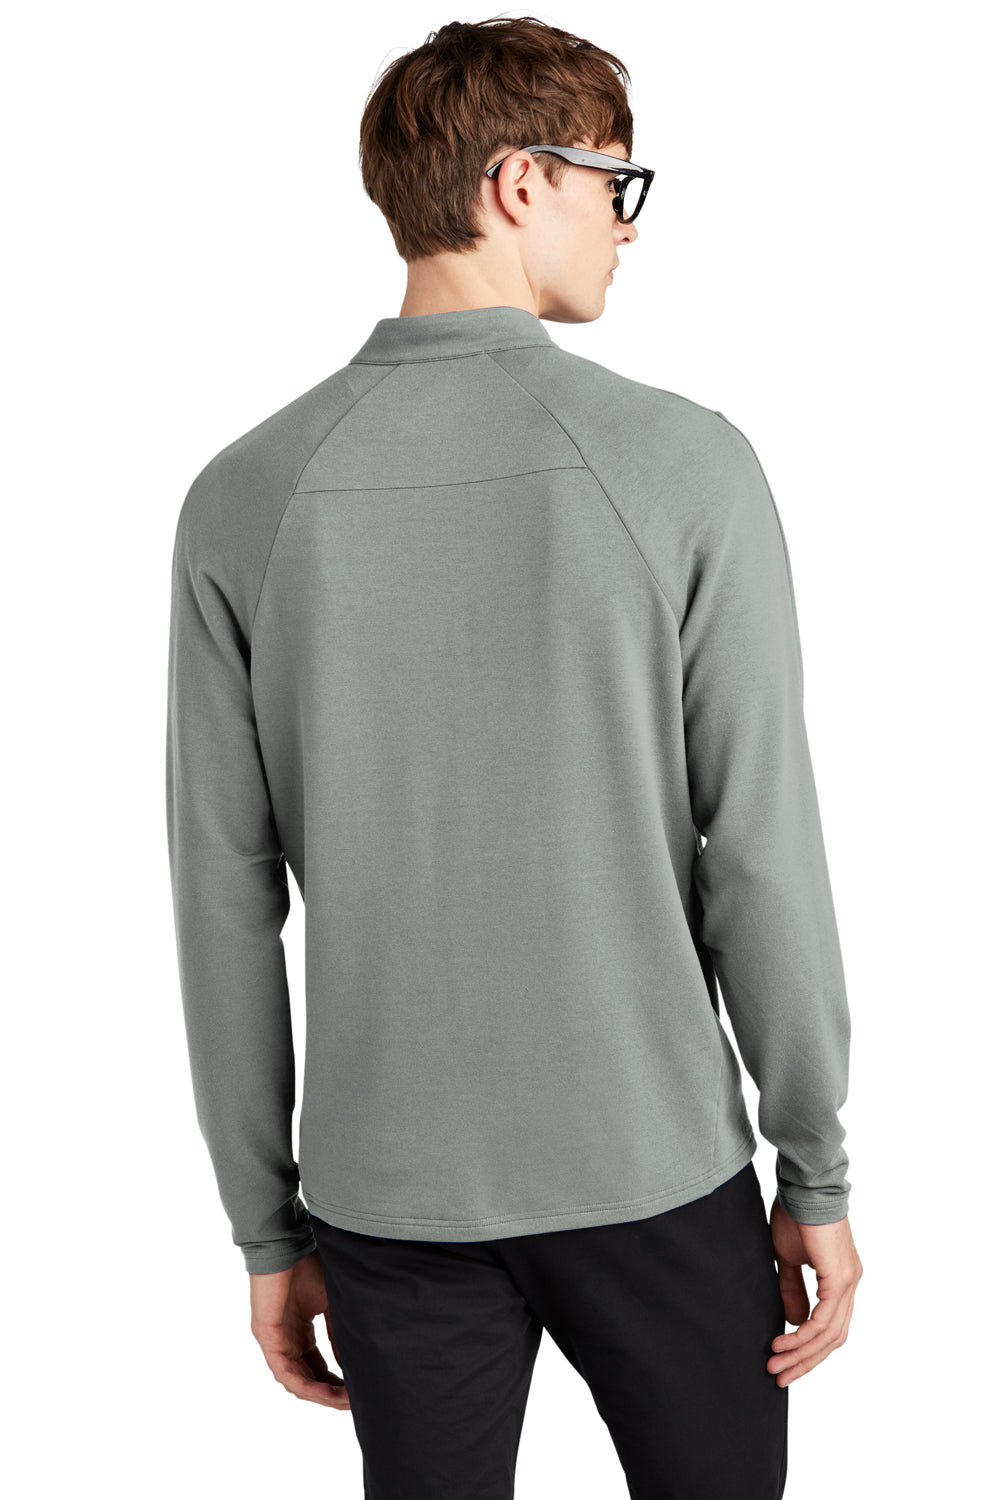 Mercer+Mettle MM3010 Stretch 1/4 Zip Sweatshirt Gusty Grey Back